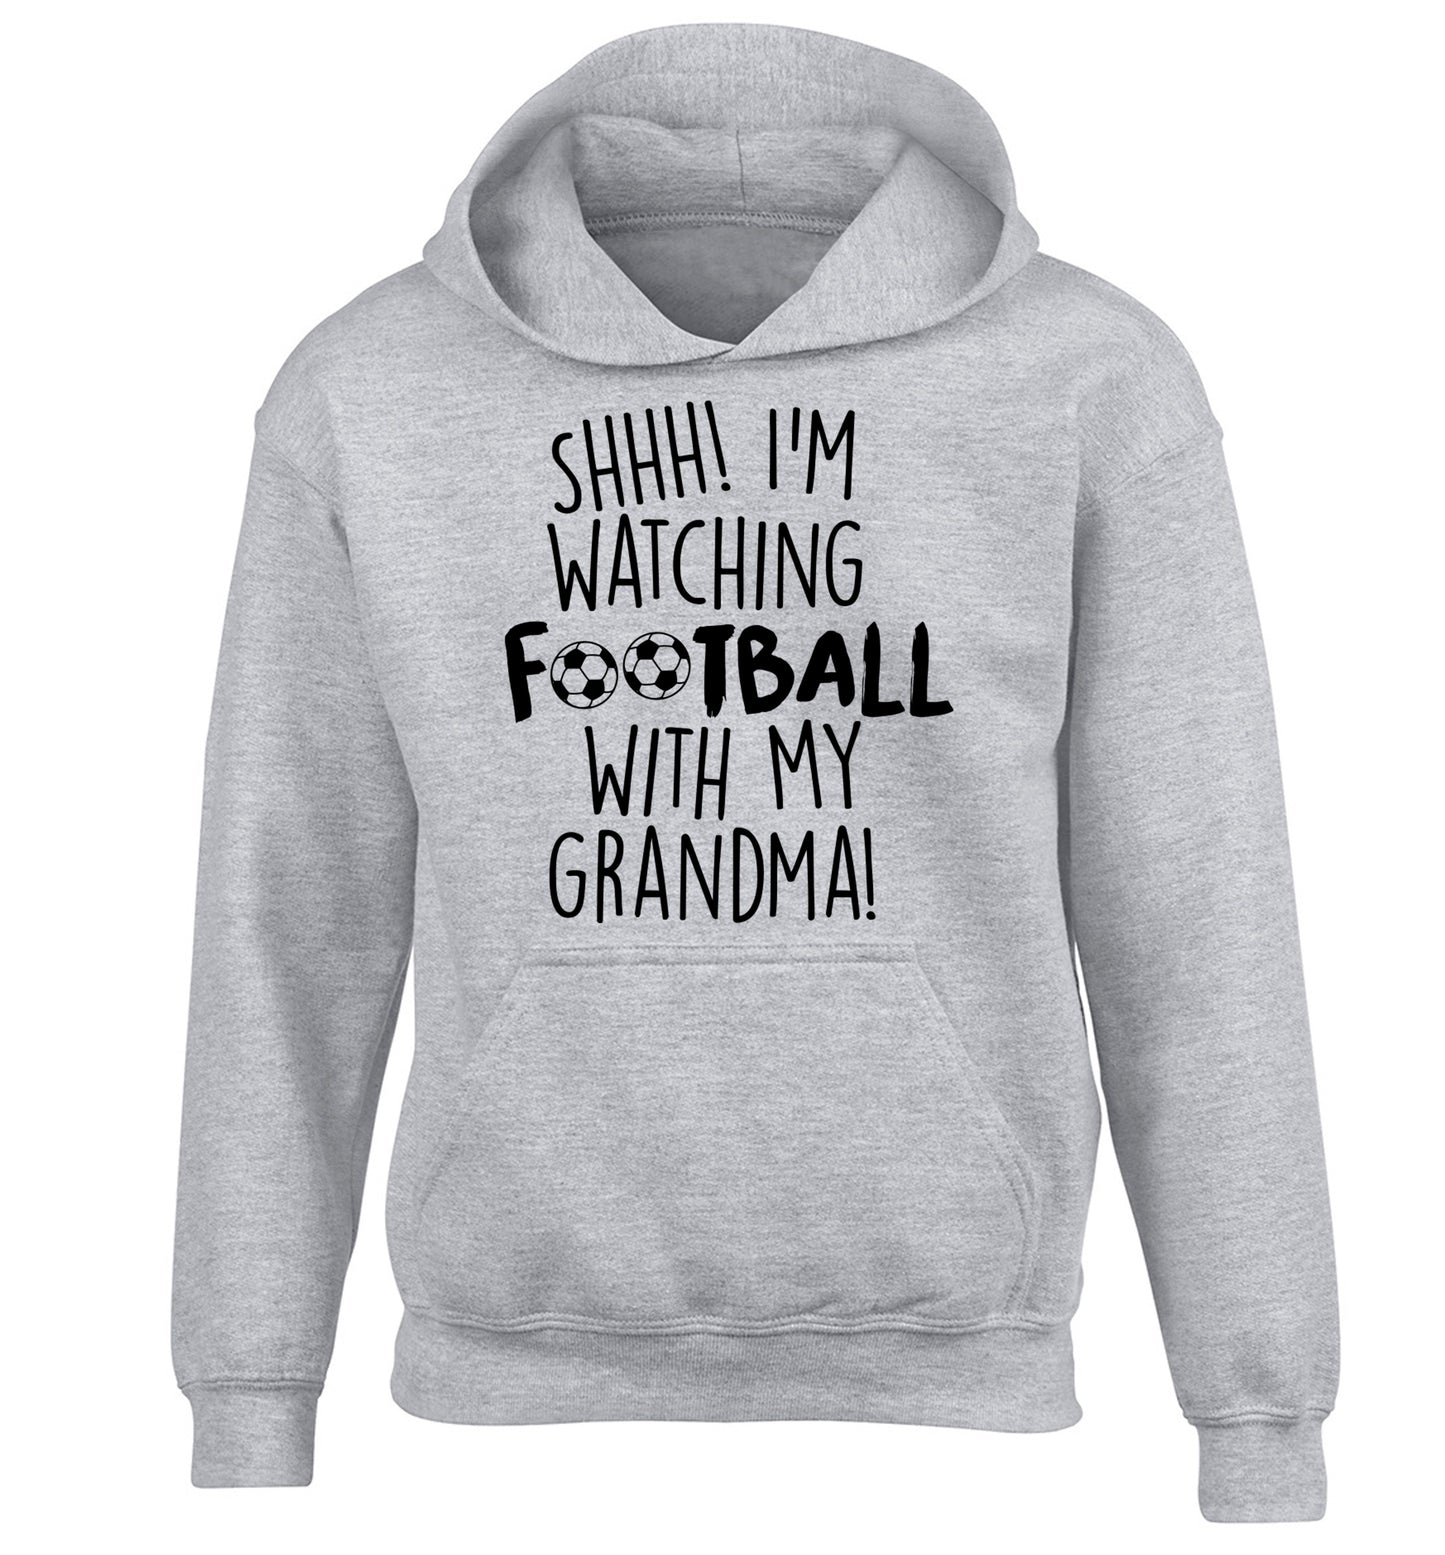 Shhh I'm watching football with my grandma children's grey hoodie 12-14 Years